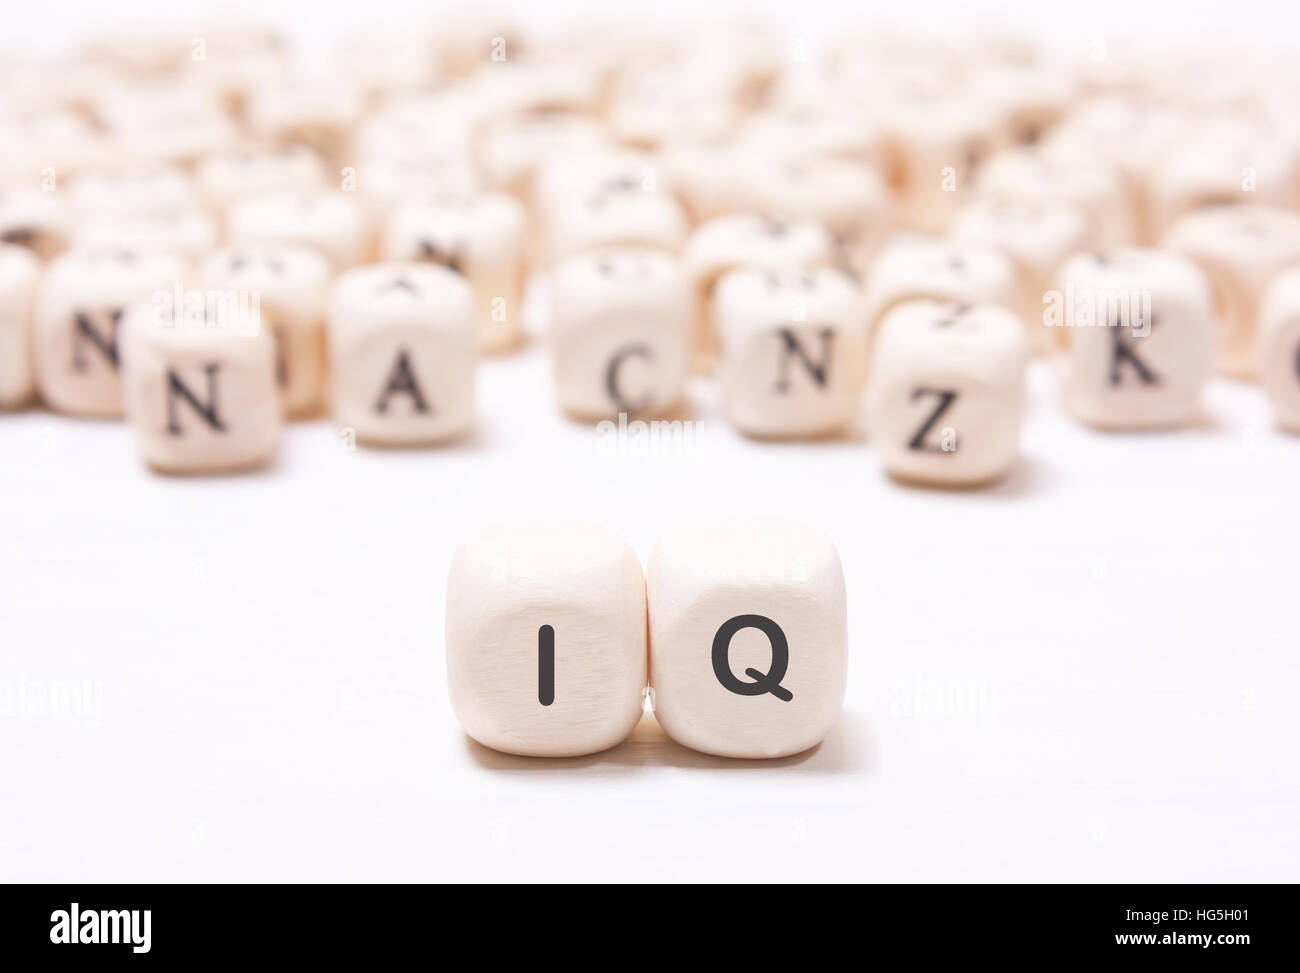 La parola "QI" sul dado bianco su uno sfondo sfocato lettere. Il concetto della mente, l'intelletto Foto Stock